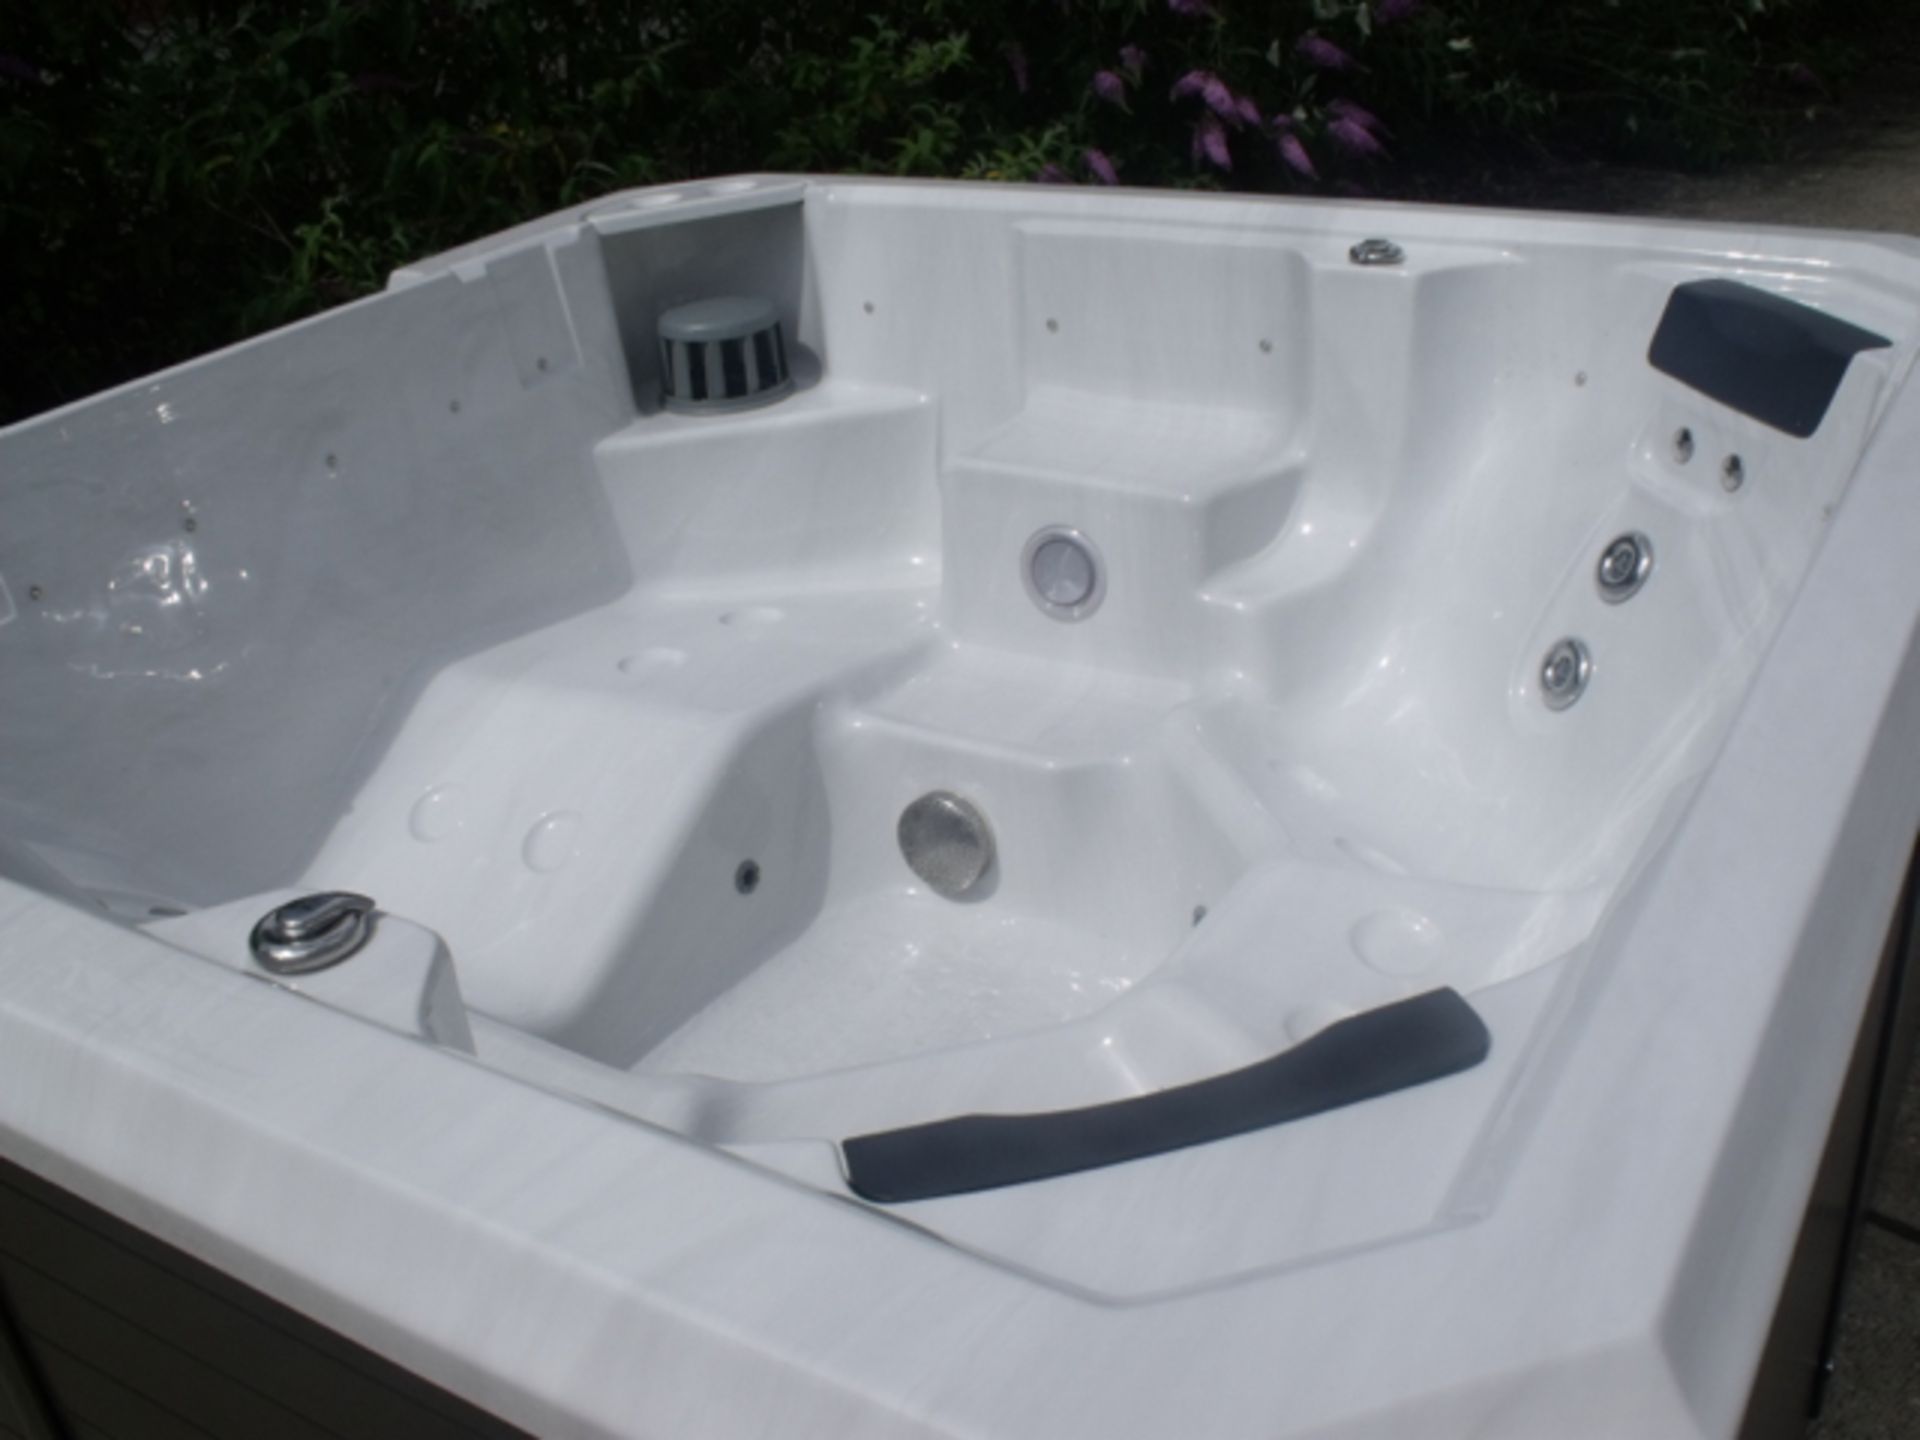 Brand New 2015 Executive Range Hot Tub. - Image 2 of 8